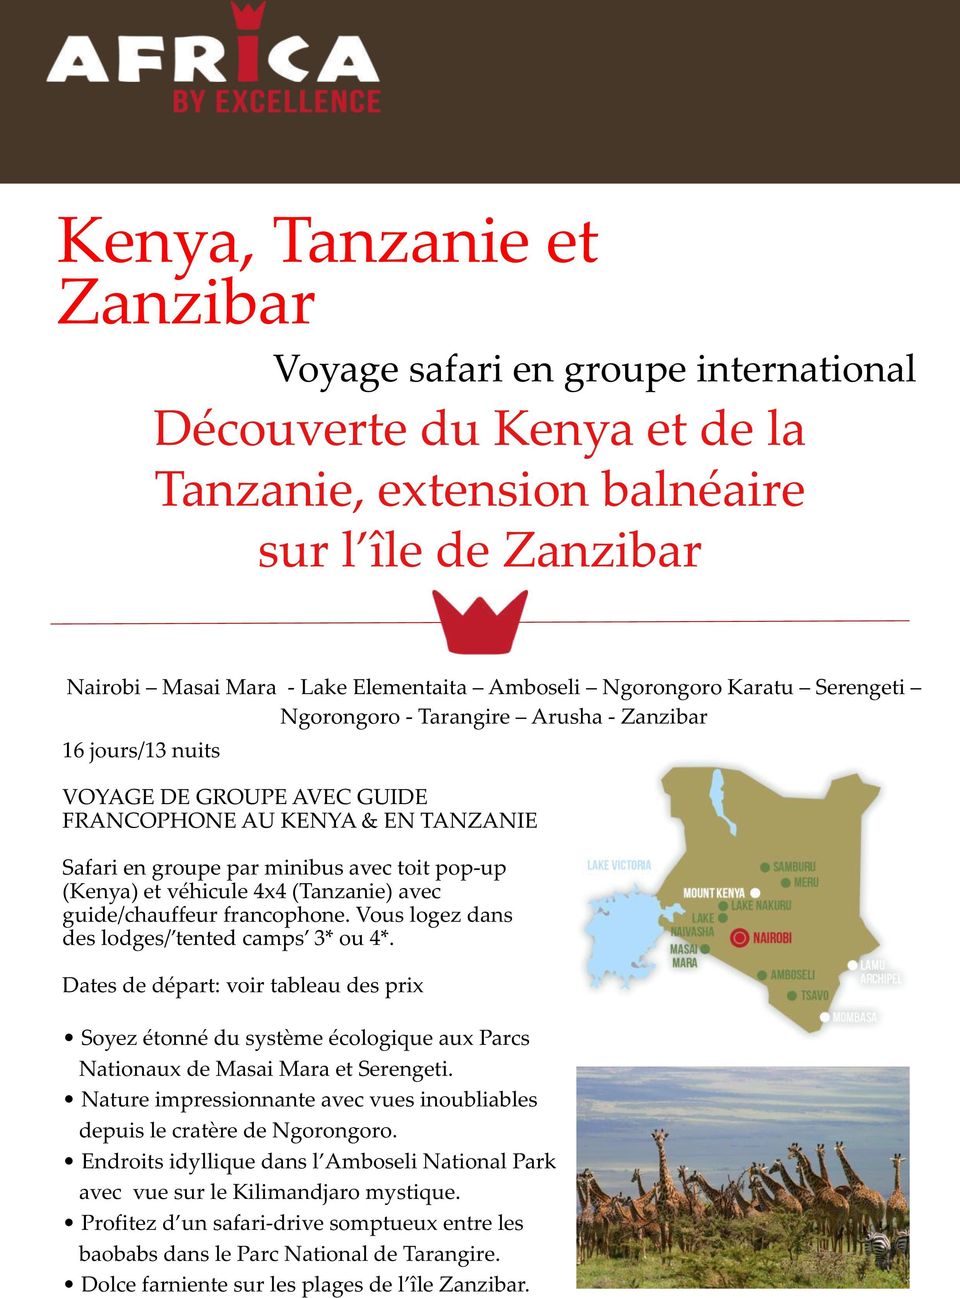 (Kenya) et véhicule 4x4 (Tanzanie) avec guide/chauffeur francophone. Vous logez dans des lodges/ tented camps 3* ou 4*.